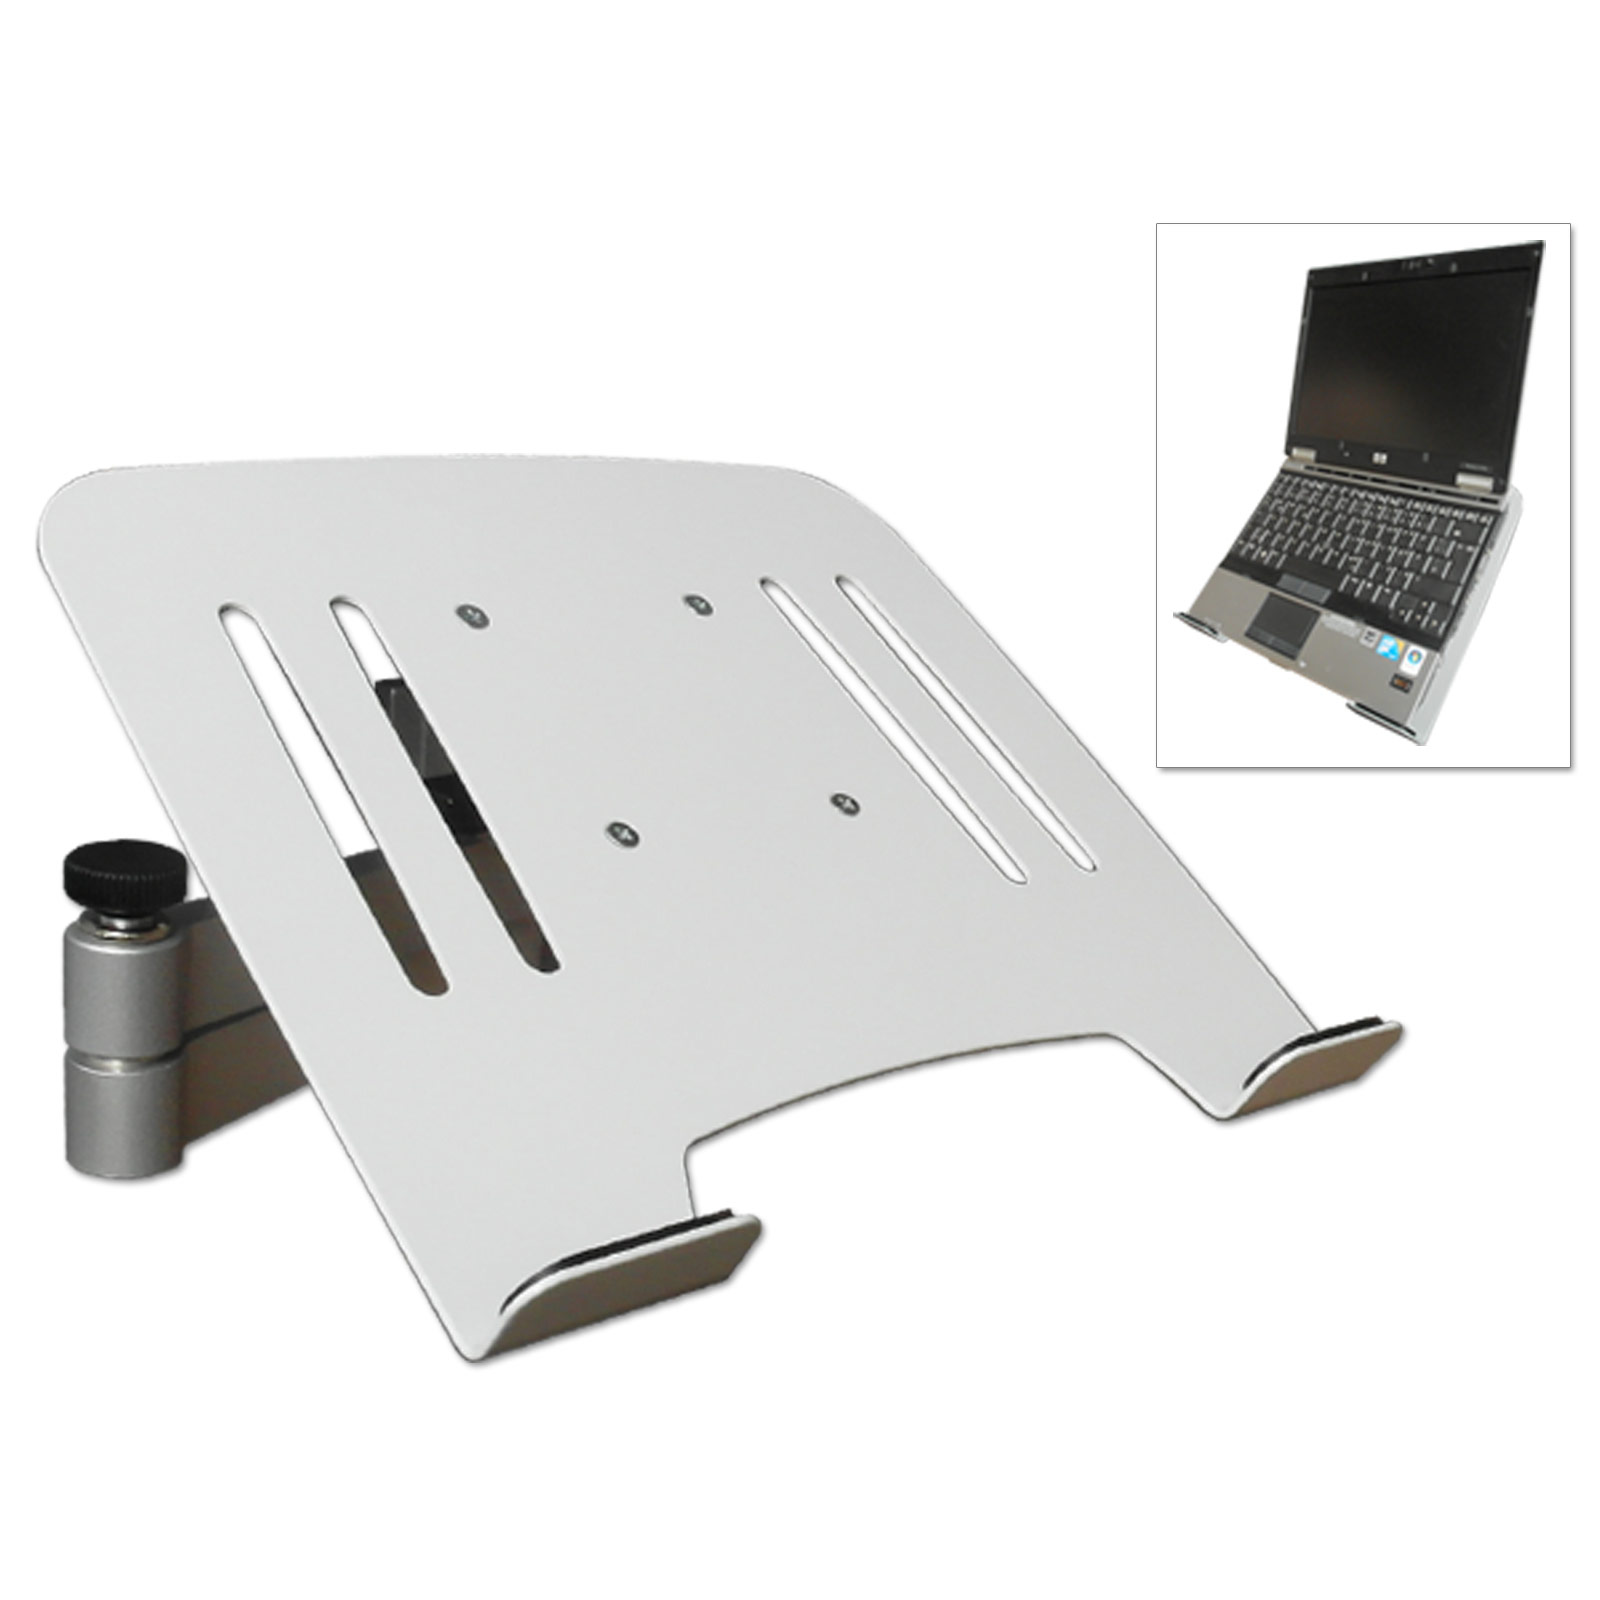 Wandhalterung - mit Ablage Halterung Laptop silber - DRALL Netbook INSTRUMENTS Wandhalterung weiß Universal Adapter Notebook